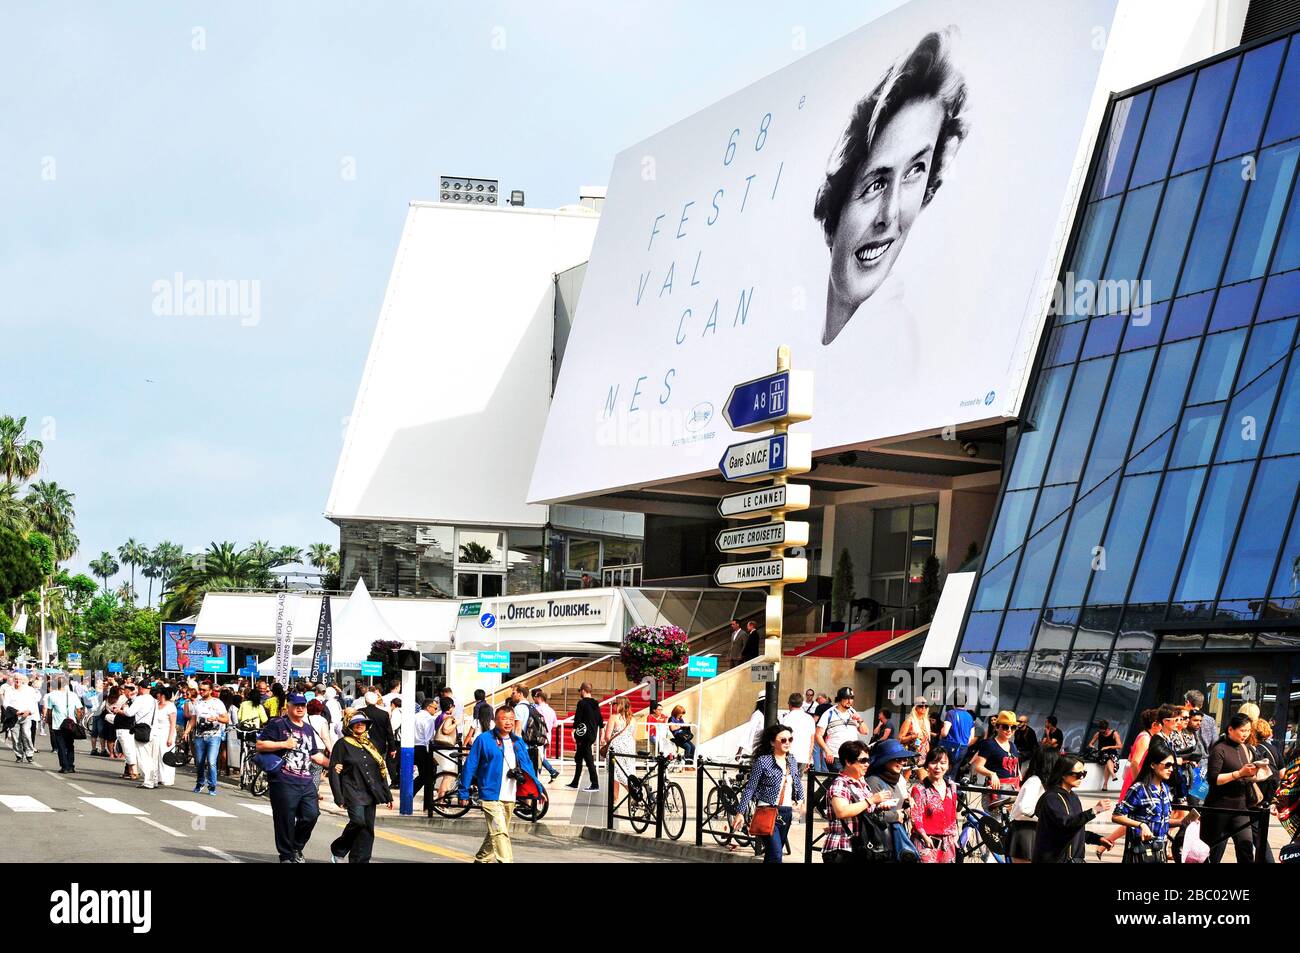 CANNES, FRANCIA - MAYO de 14: Gente alrededor del Palacio de Festivales, en el Paseo de la Croisette, durante la edición 68 del Festival de Cine de Cannes Foto de stock